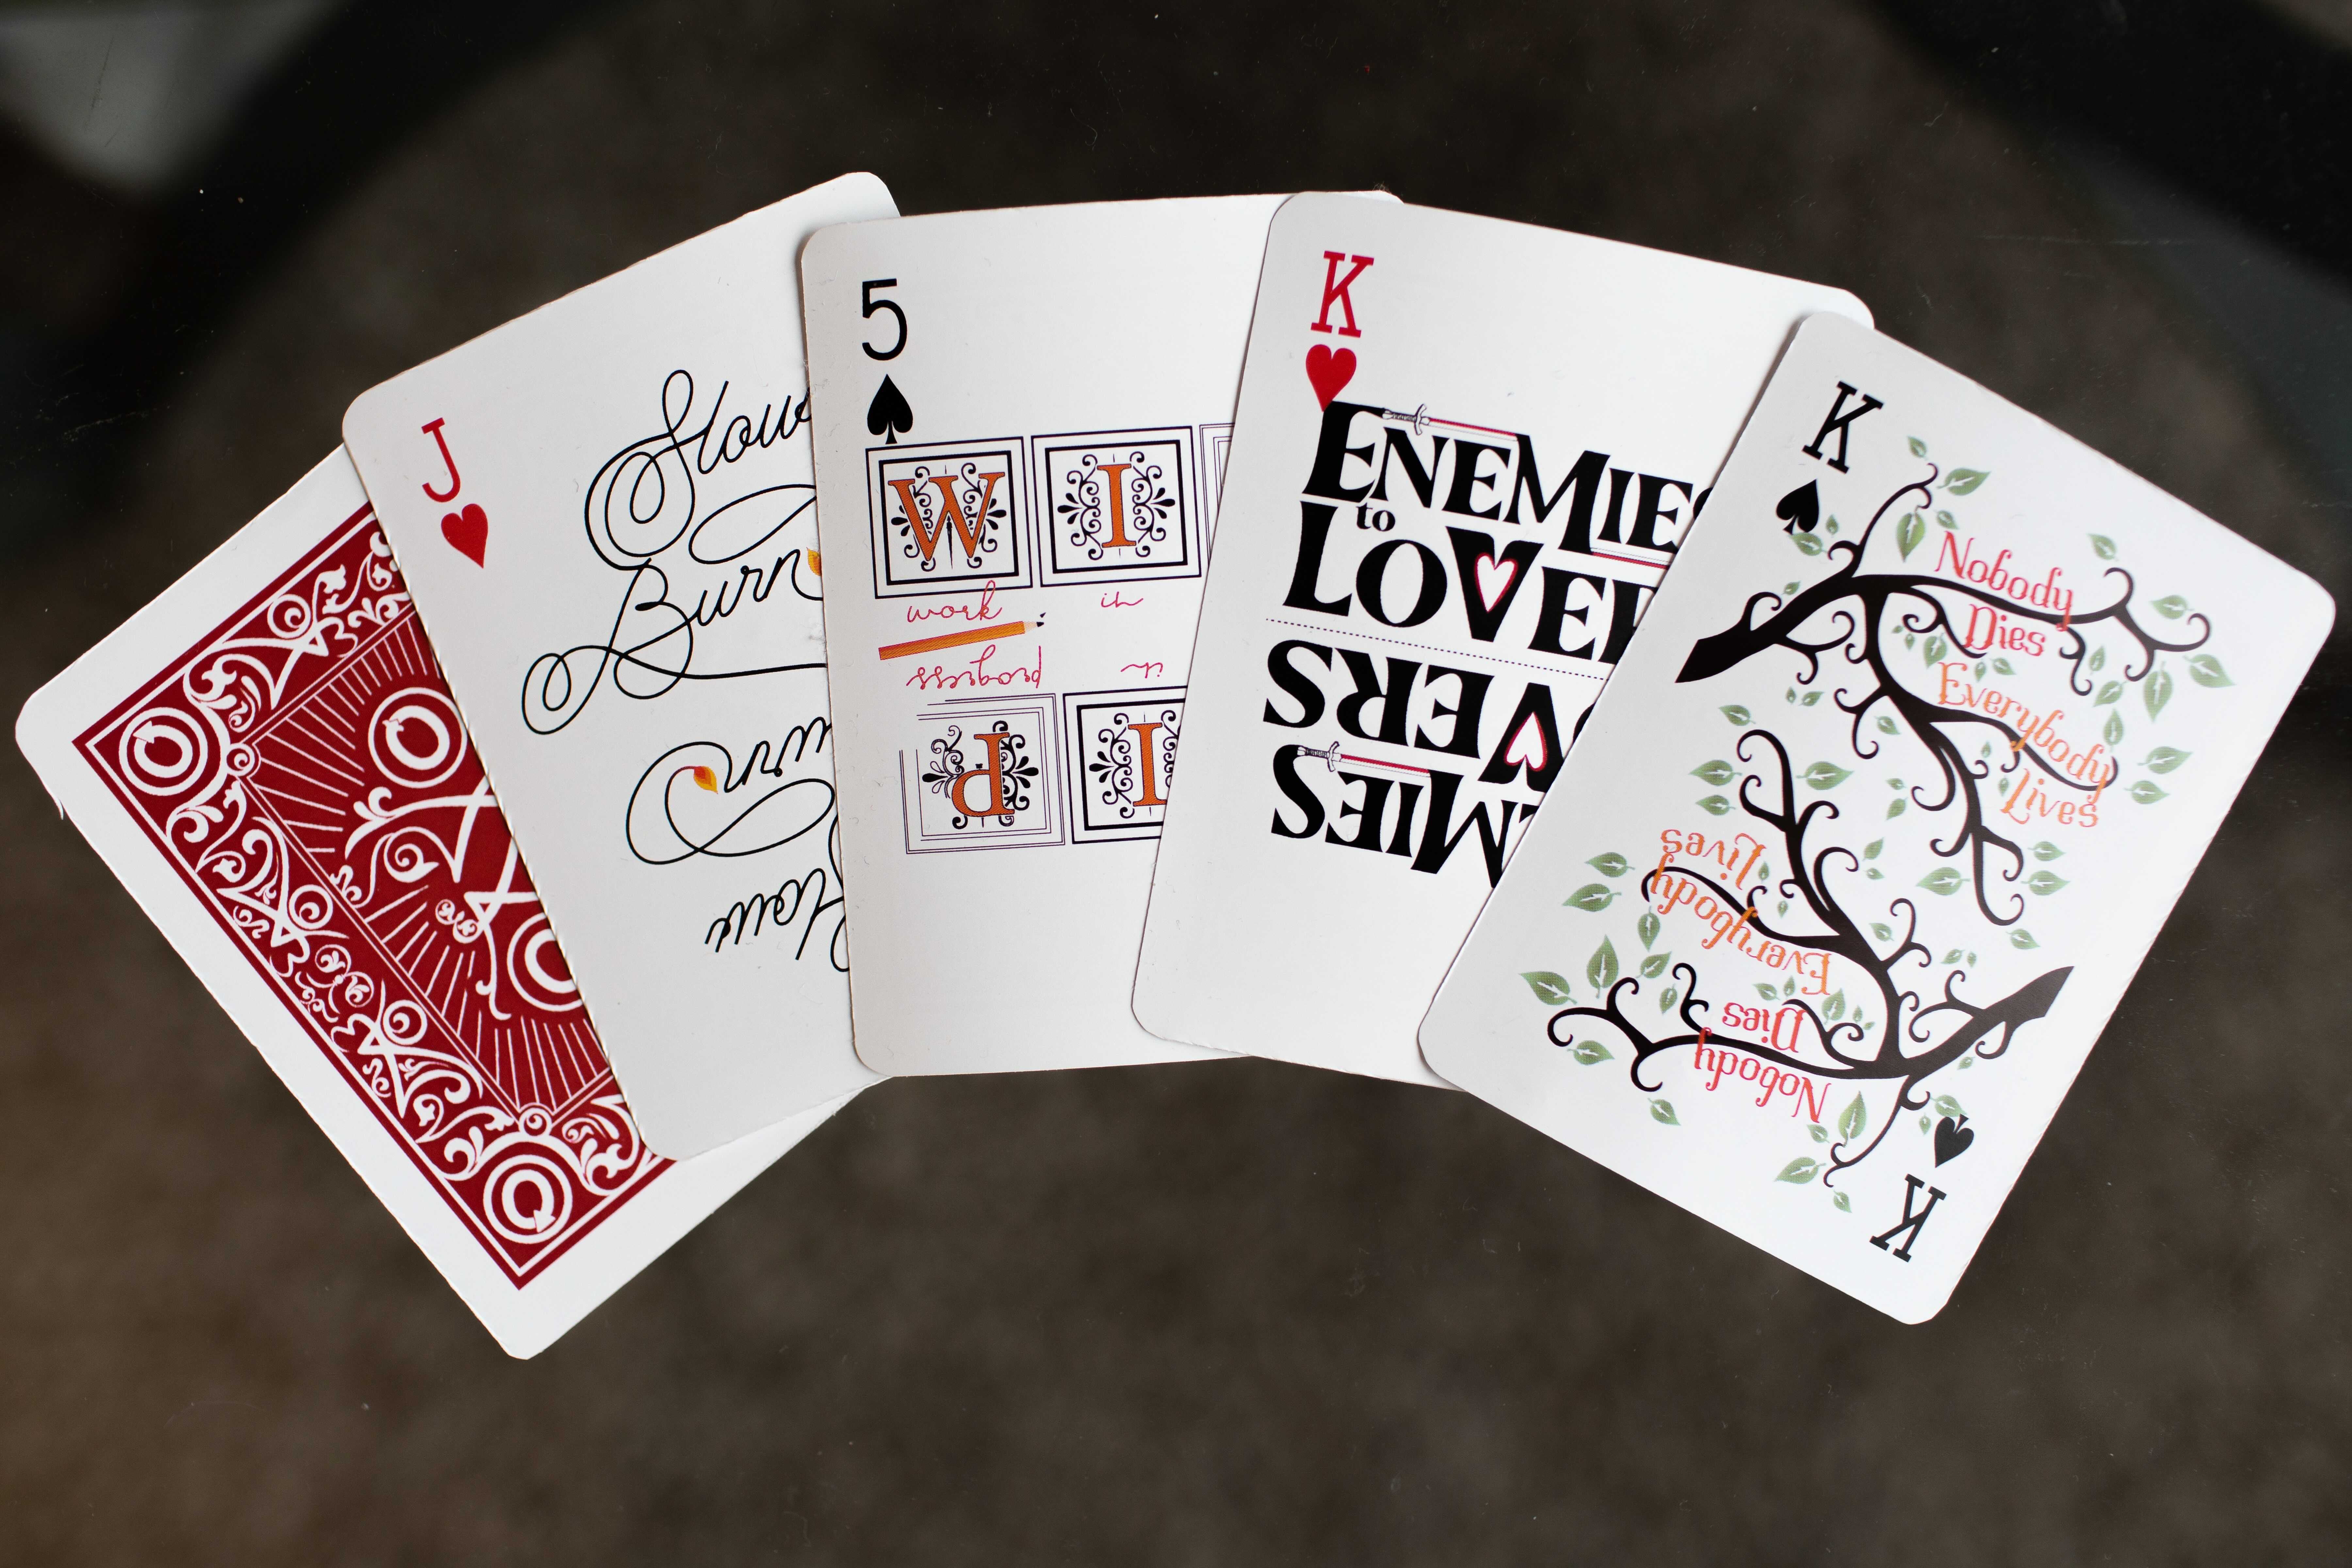 Илюстрирани карти за игра, всяка от които представлява различна фенска концепция: "Everybody Lives, Nobody Dies", изписано върху клоните на дърво, надпис "Enemies to Lovers", украсен с мечове, инициалите на "Work in Progress", украсени в средновековен стил, а надписът на последната карта - "Slow Burn" - завършва с пламъче. Една обърната карта показва илюстрацията на гърба, която включва и логото на AO3.